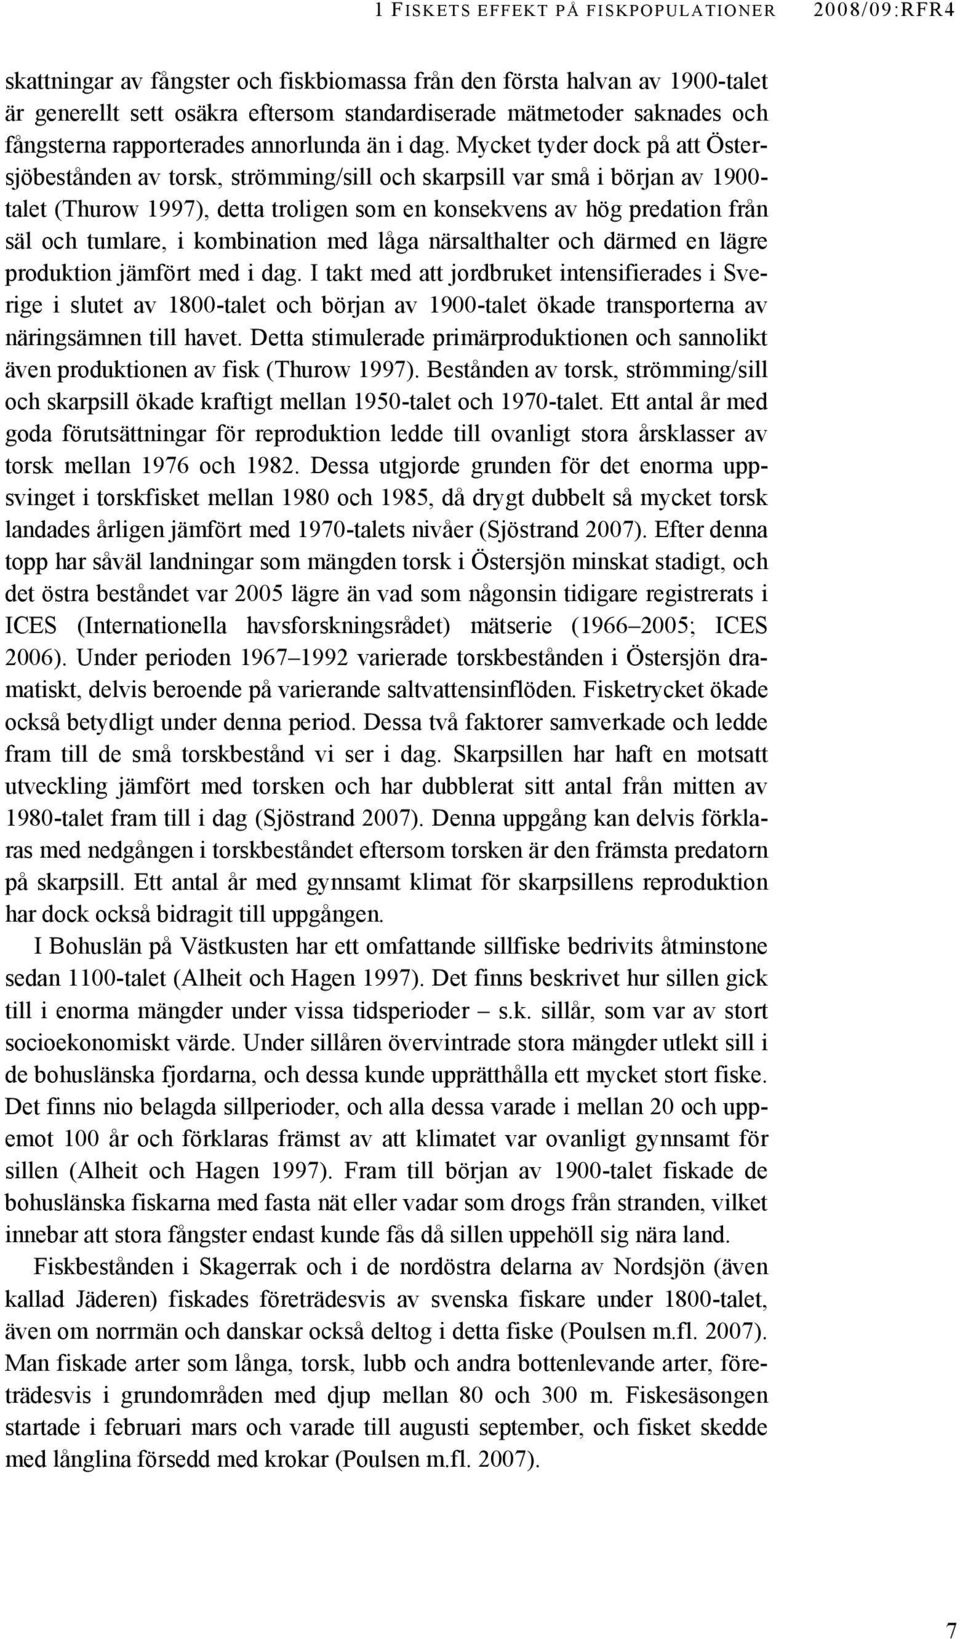 Mycket tyder dock på att Östersjöbestånden av torsk, strömming/sill och skarpsill var små i början av 1900- talet (Thurow 1997), detta troligen som en konsekvens av hög predation från säl och